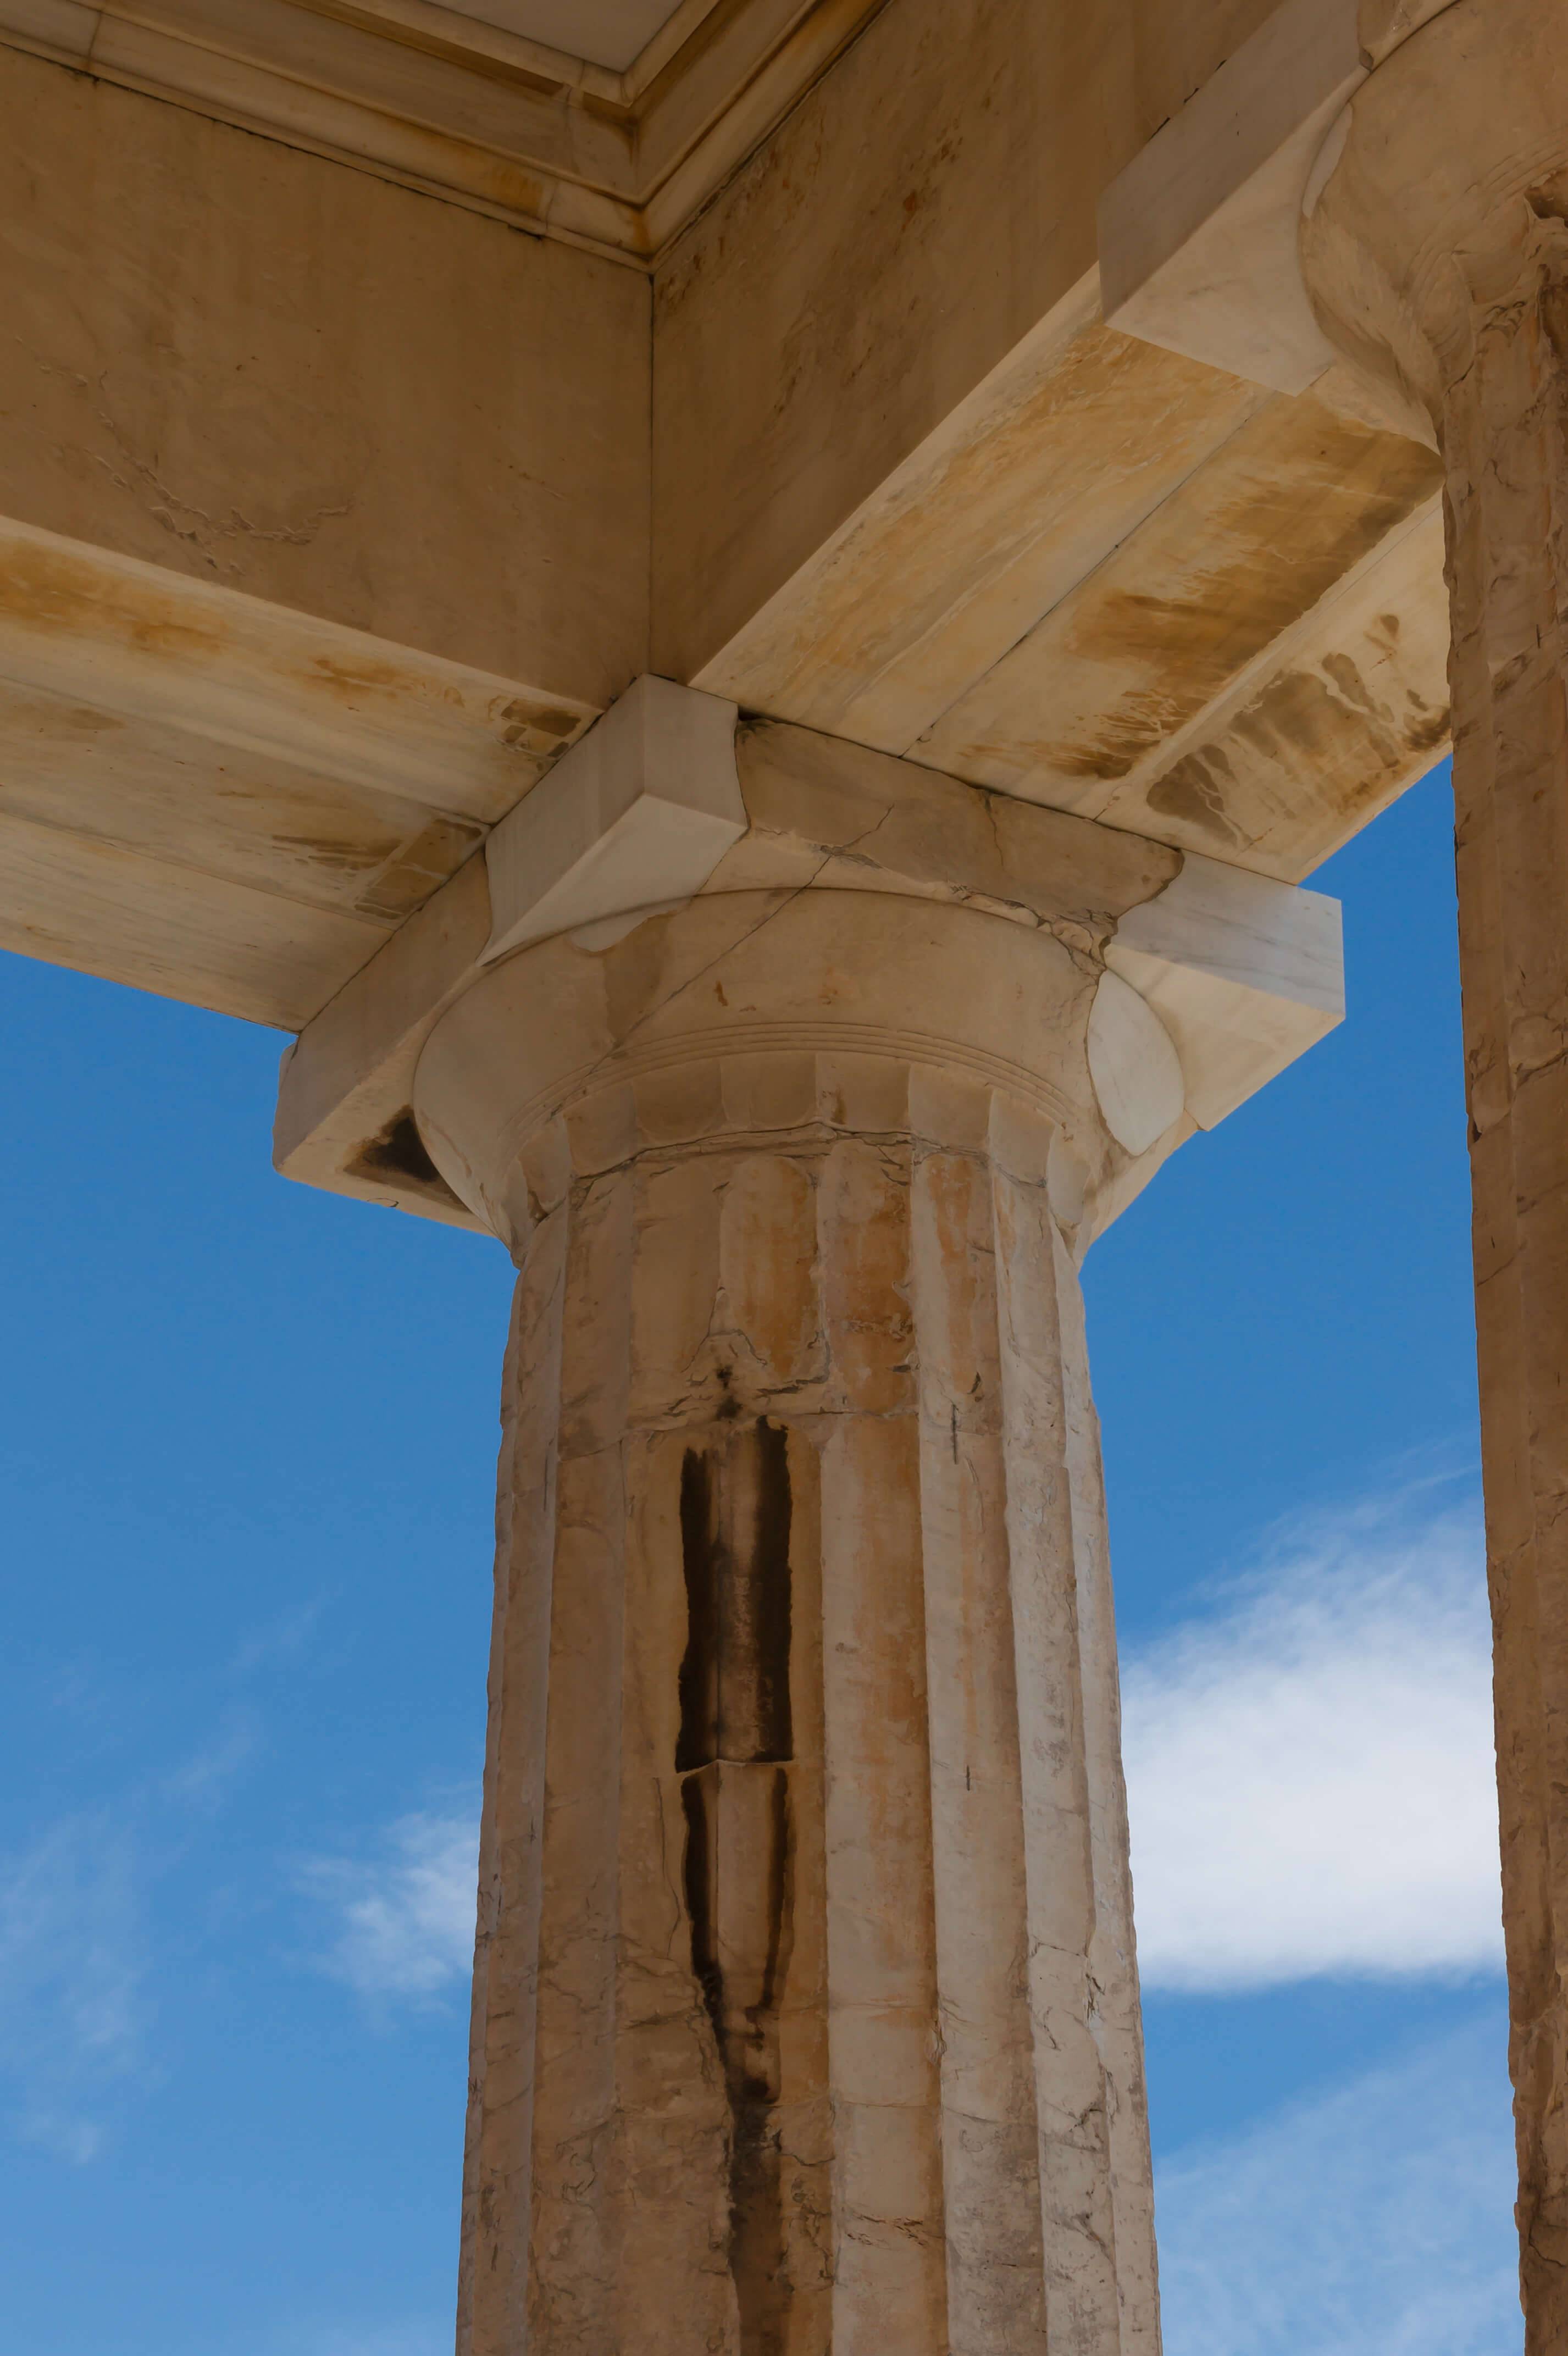 他们创造出三种柱式,一种是"多立克柱式",粗而结实,柱头很简单,造型